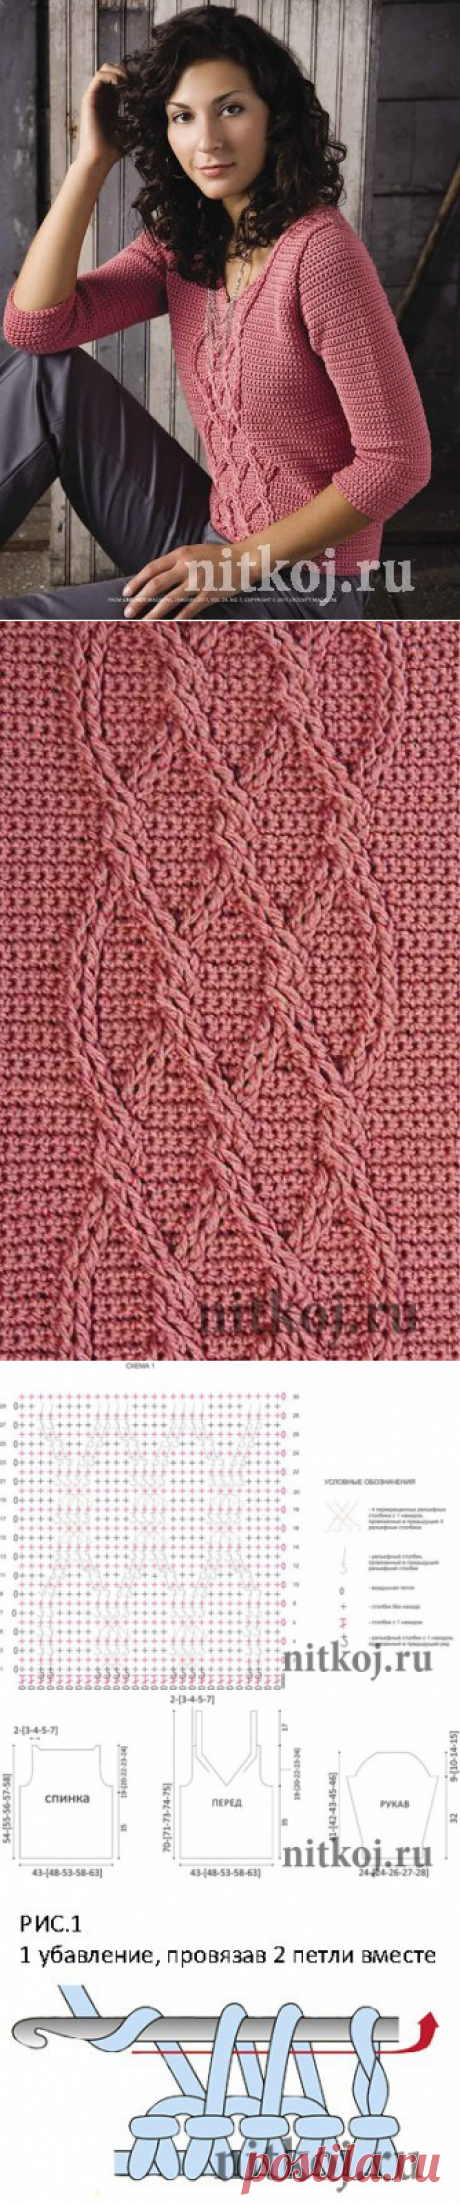 Розовый пуловер крючком » Ниткой - вязаные вещи для вашего дома, вязание крючком, вязание спицами, схемы вязания